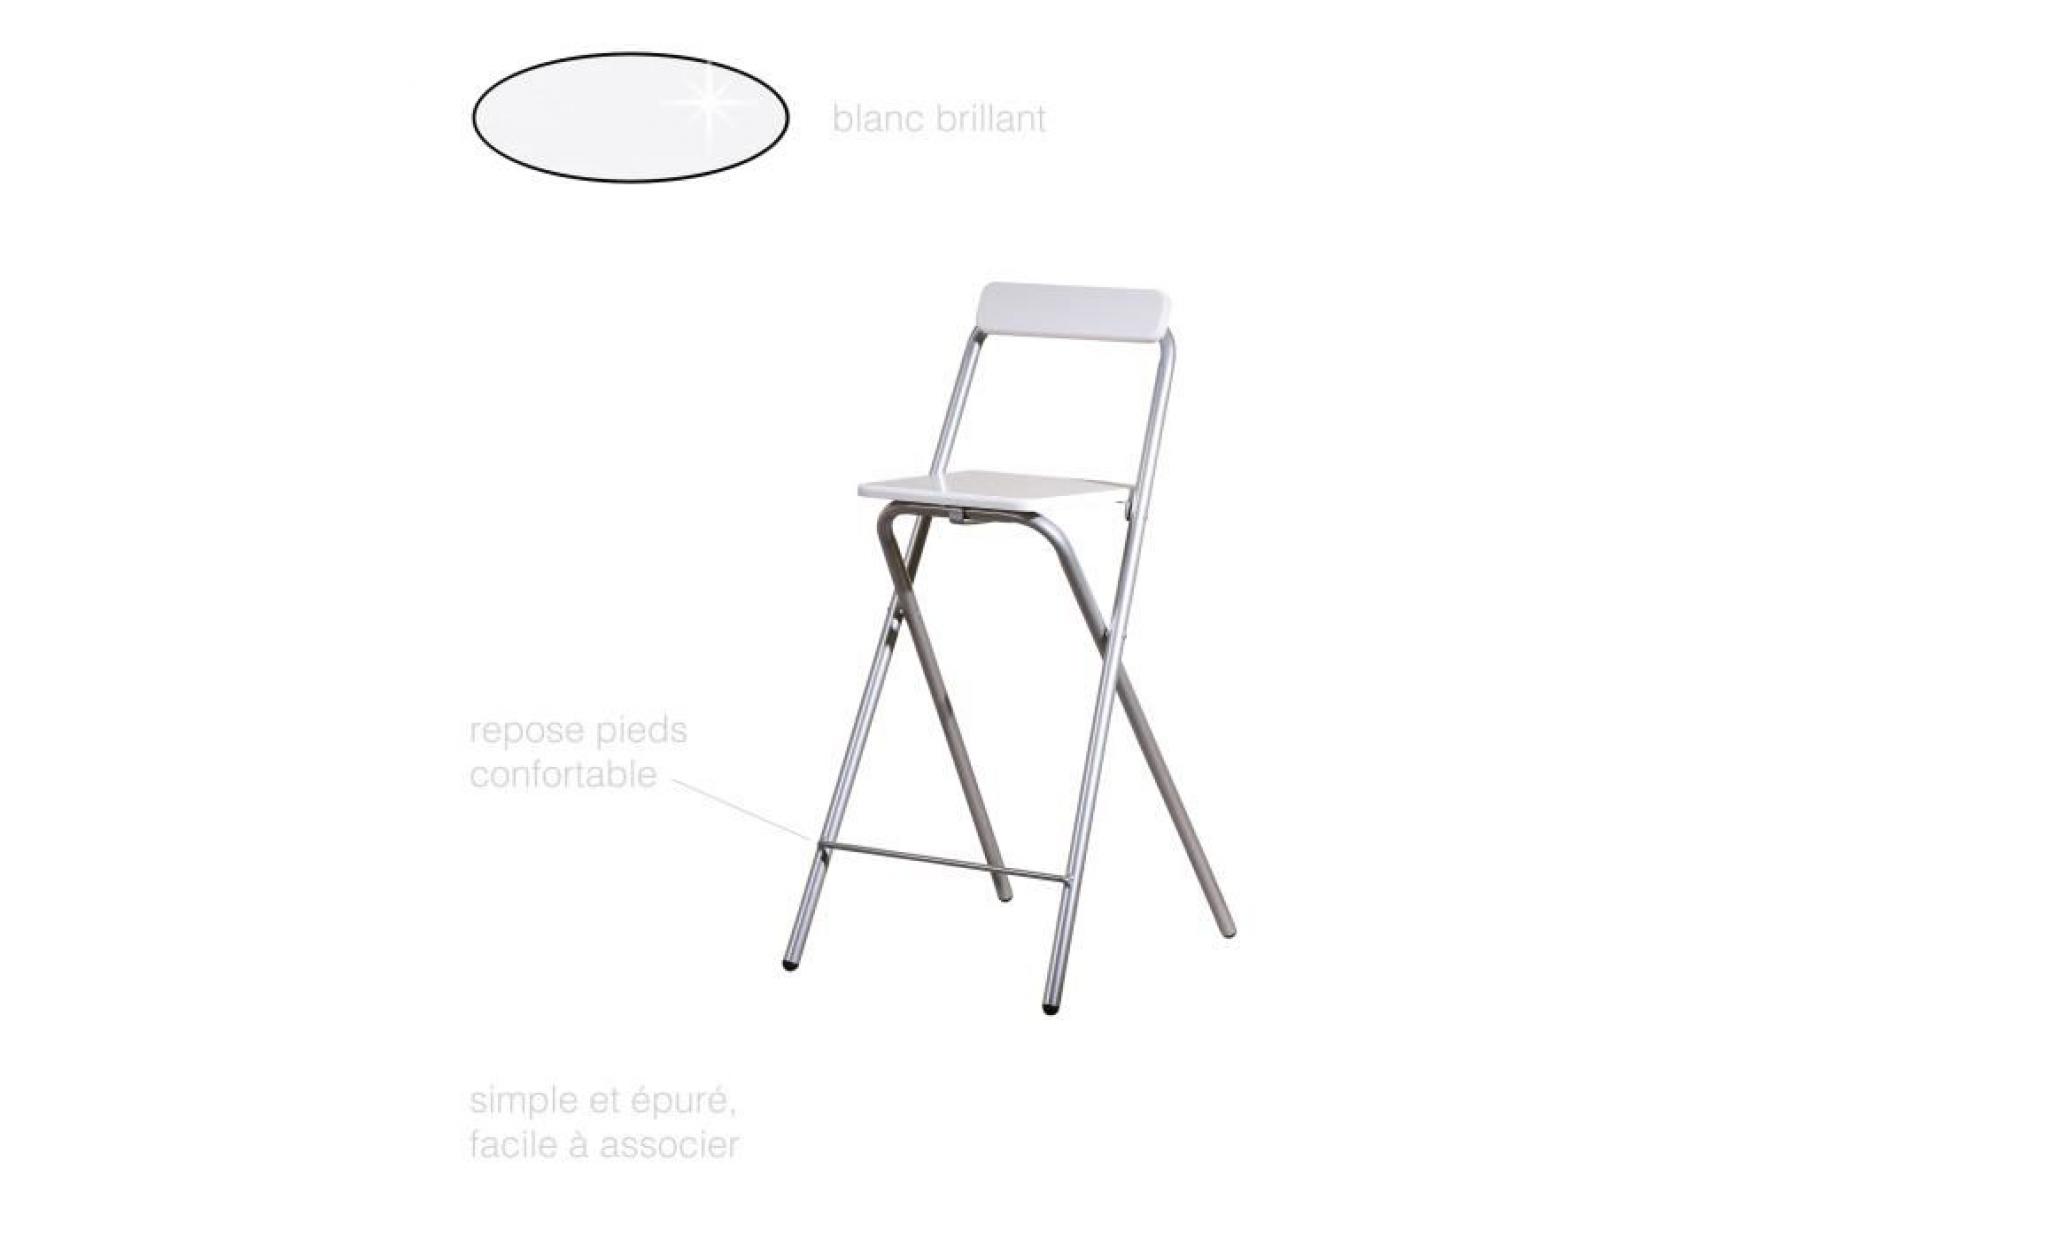 chaise pliante, chaise haute pliante, tabouret de bar, tabouret pliant, chaise blanche, tabouret blanc, chaise haute de bar blanche